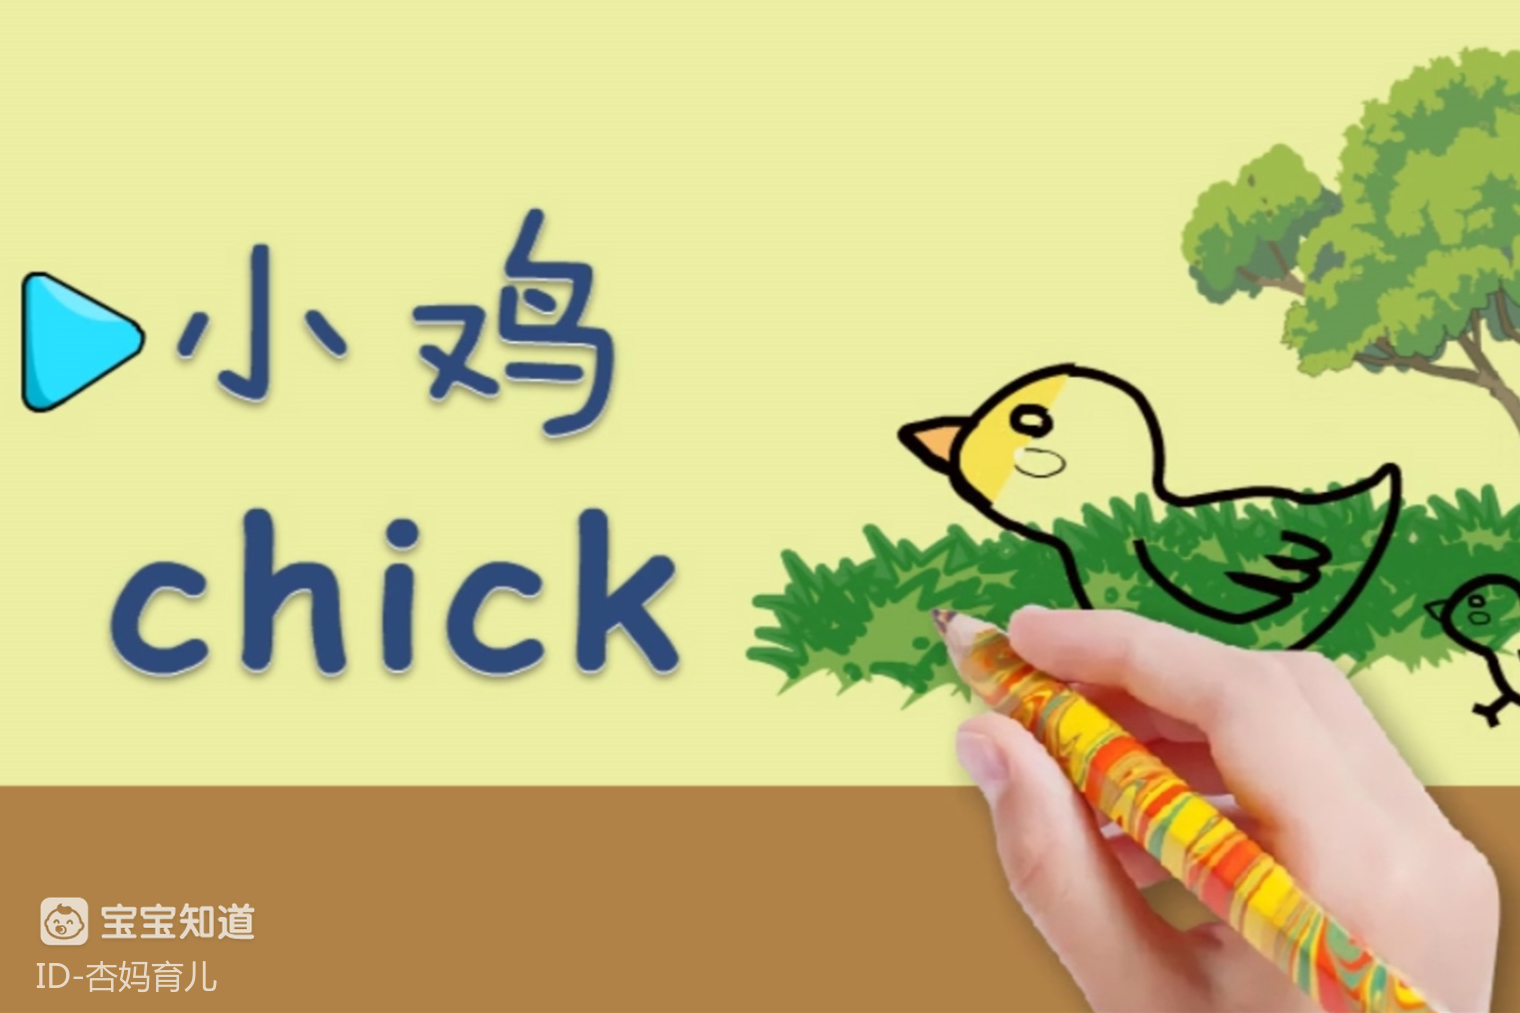 亲子绘画英语13:公园里可爱的小鸡,我们一起来学画吧!